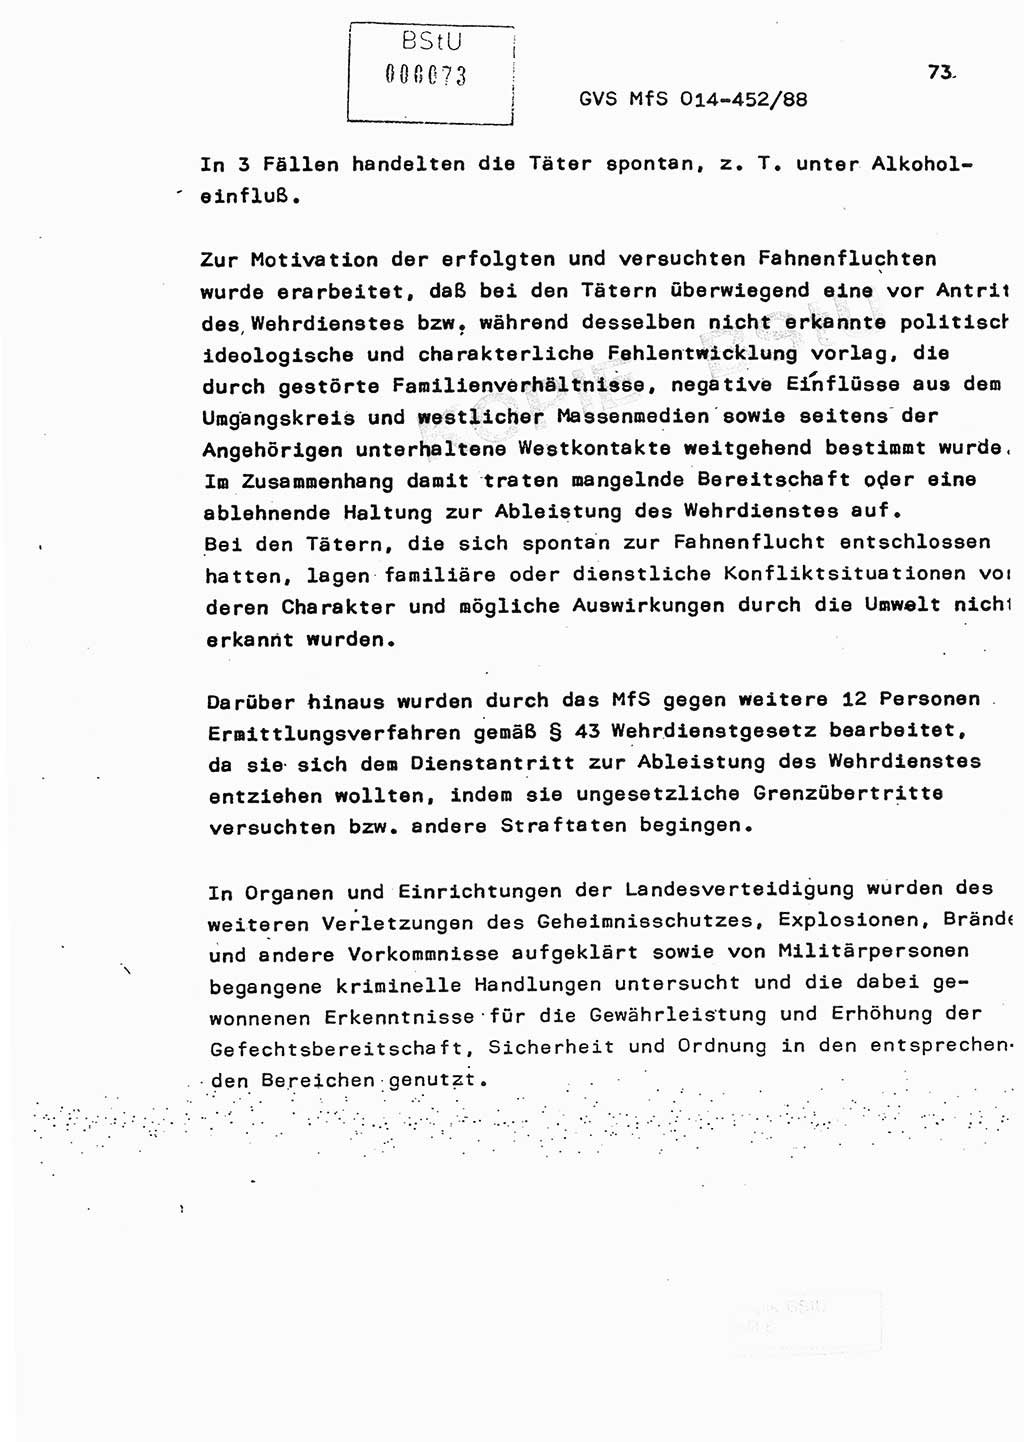 Jahresbericht der Hauptabteilung (HA) Ⅸ 1987, Einschätzung der Wirksamkeit der Untersuchungsarbeit im Jahre 1987, Ministerium für Staatssicherheit (MfS) der Deutschen Demokratischen Republik (DDR), Hauptabteilung Ⅸ, Geheime Verschlußsache (GVS) o014-452/88, Berlin 1988, Seite 73 (Einsch. MfS DDR HA Ⅸ GVS o014-452/88 1987, S. 73)